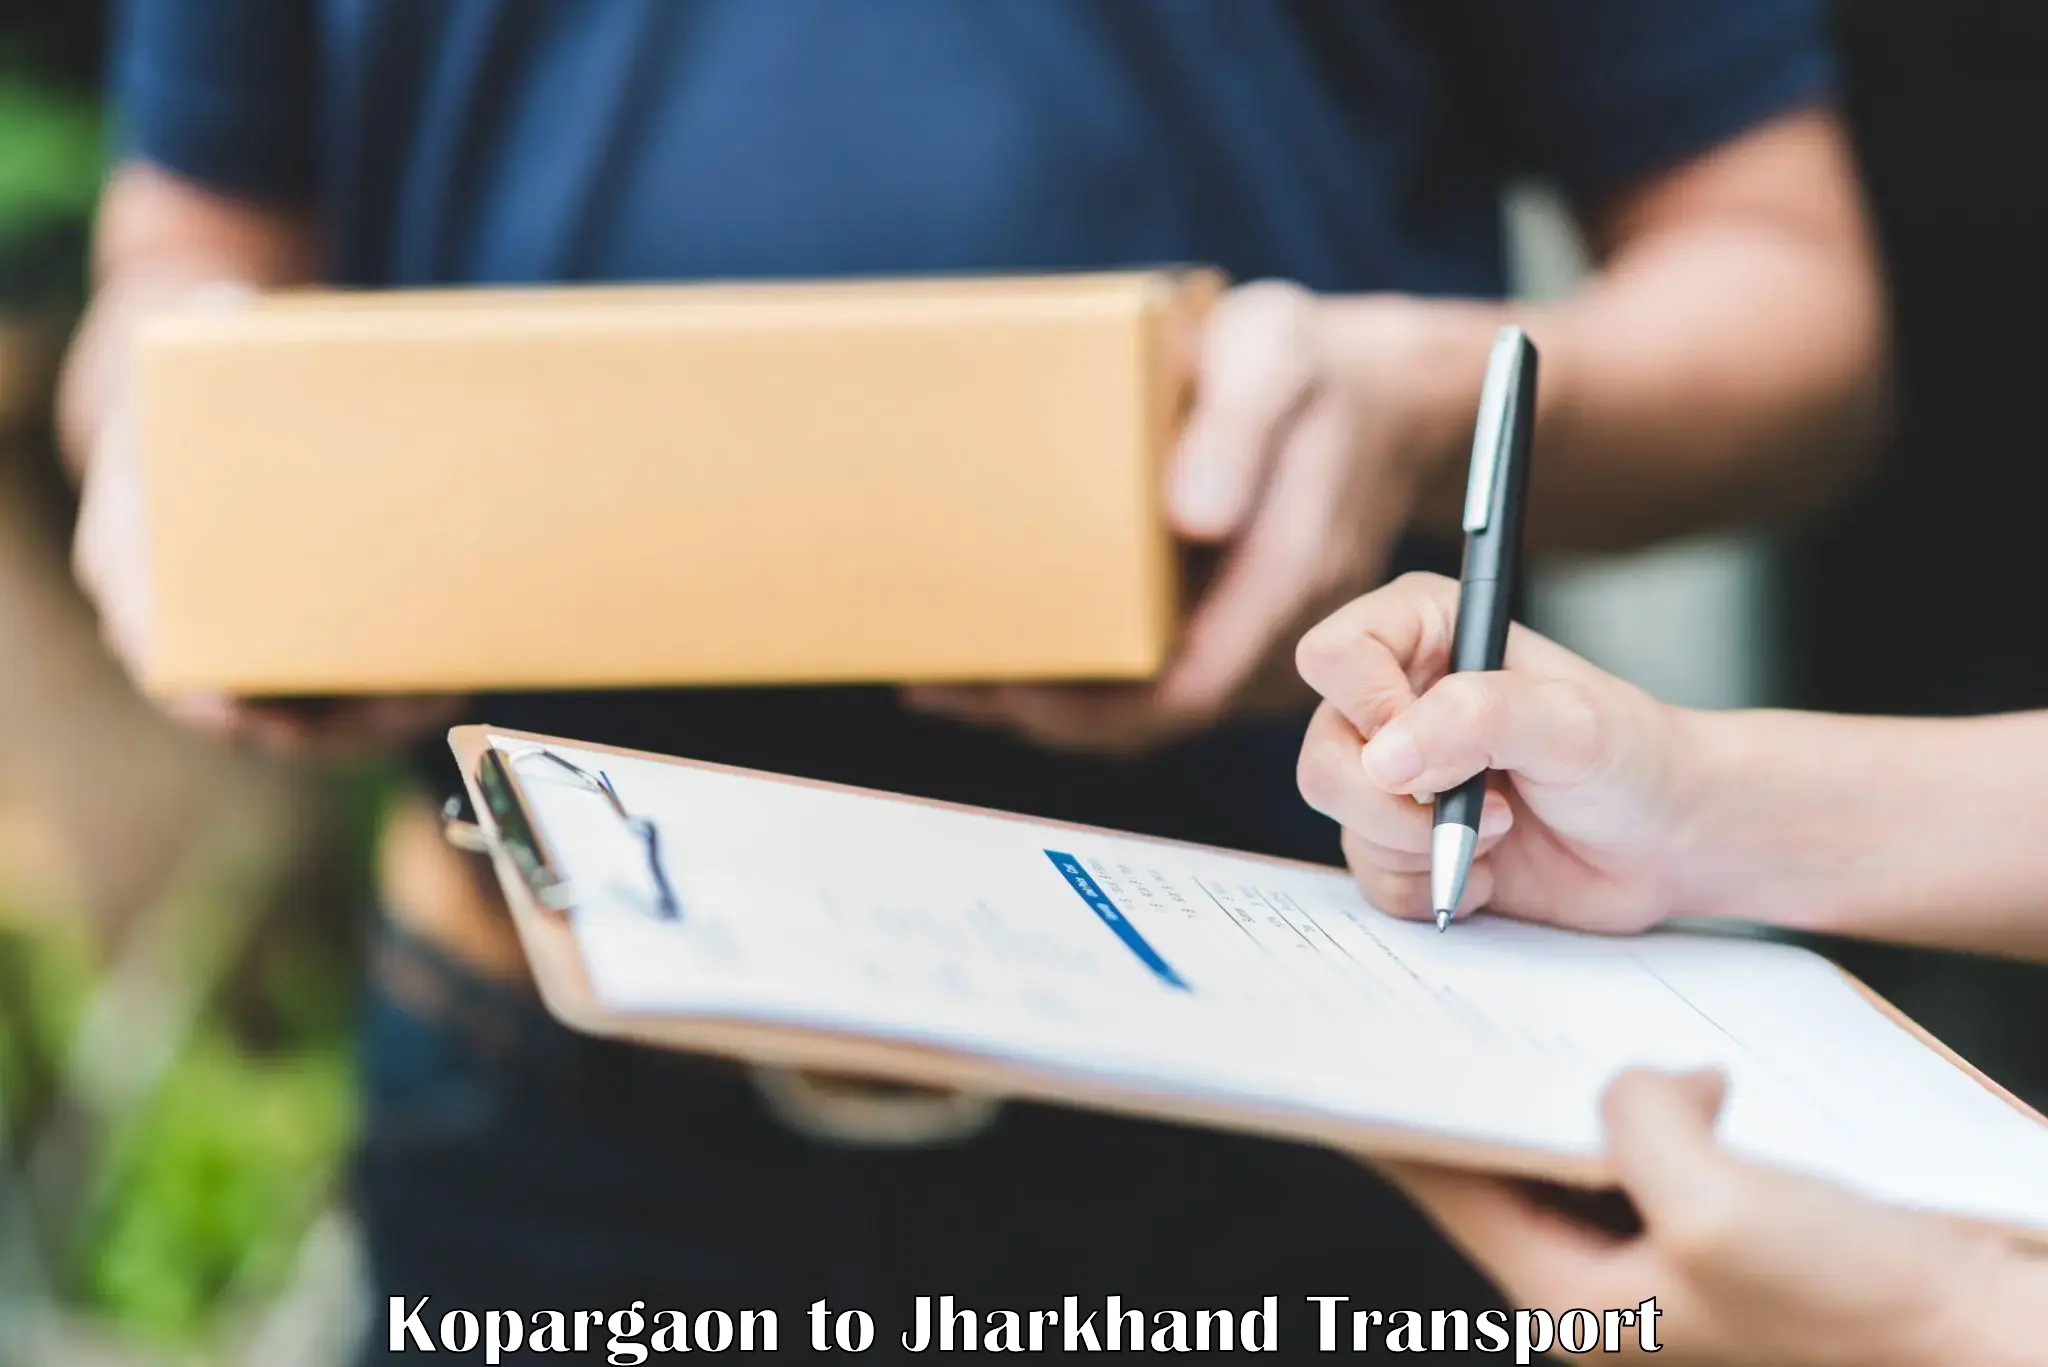 Road transport online services Kopargaon to Govindpur